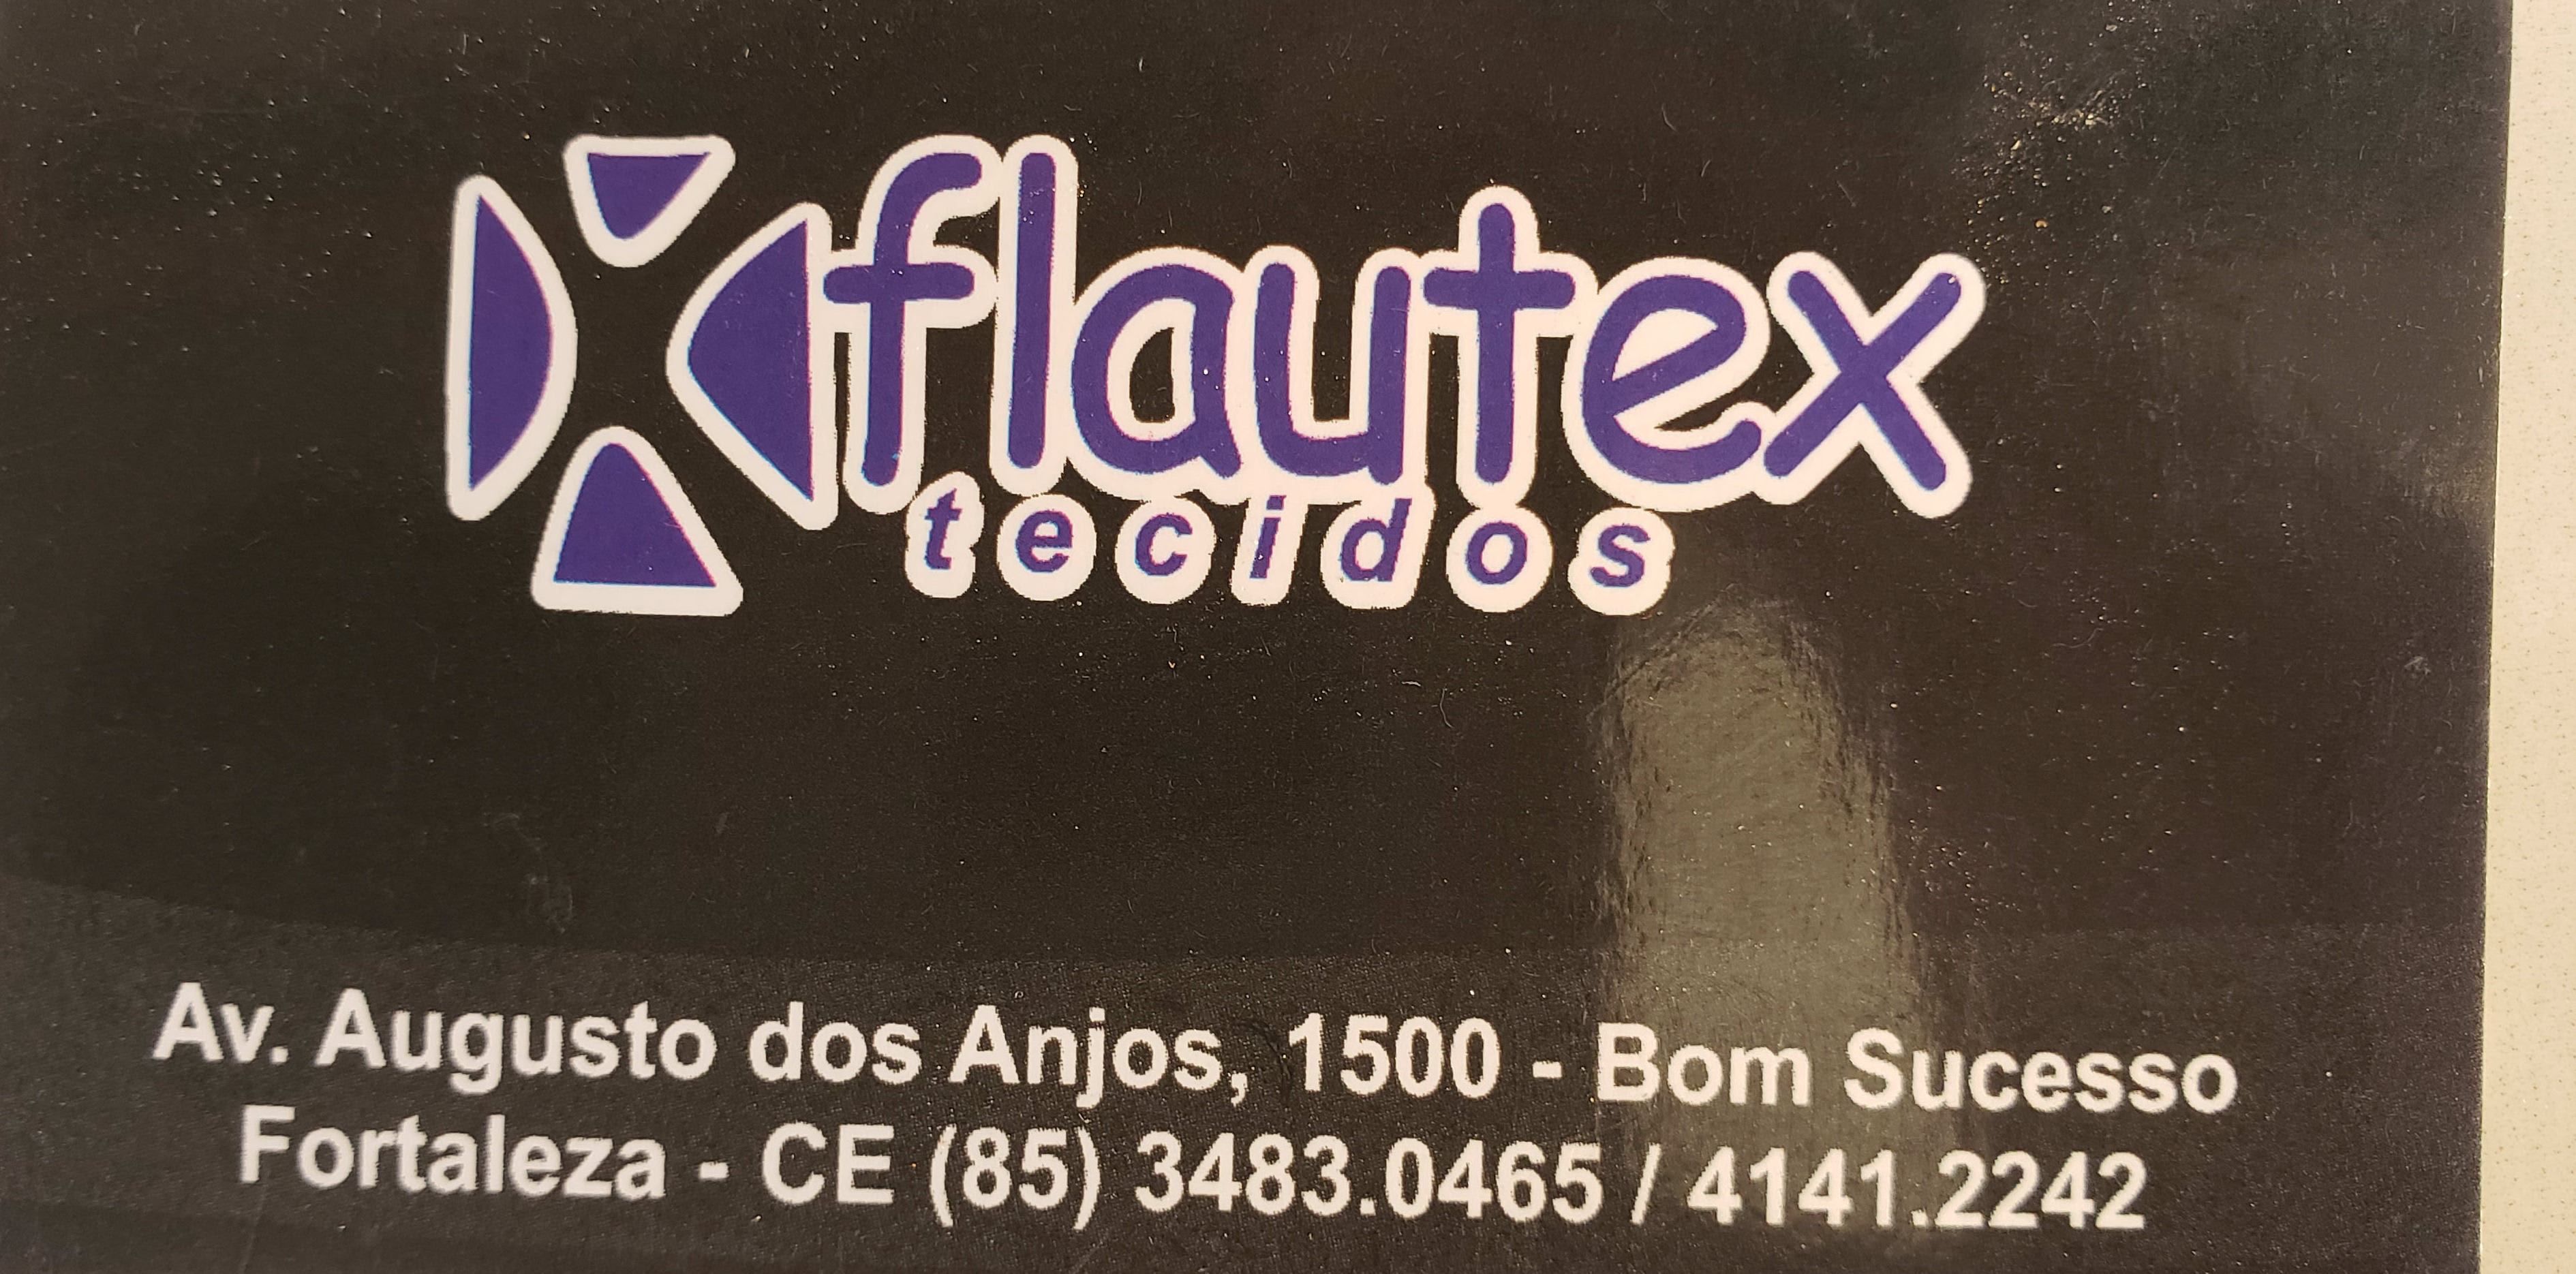 Flautex Tecidos